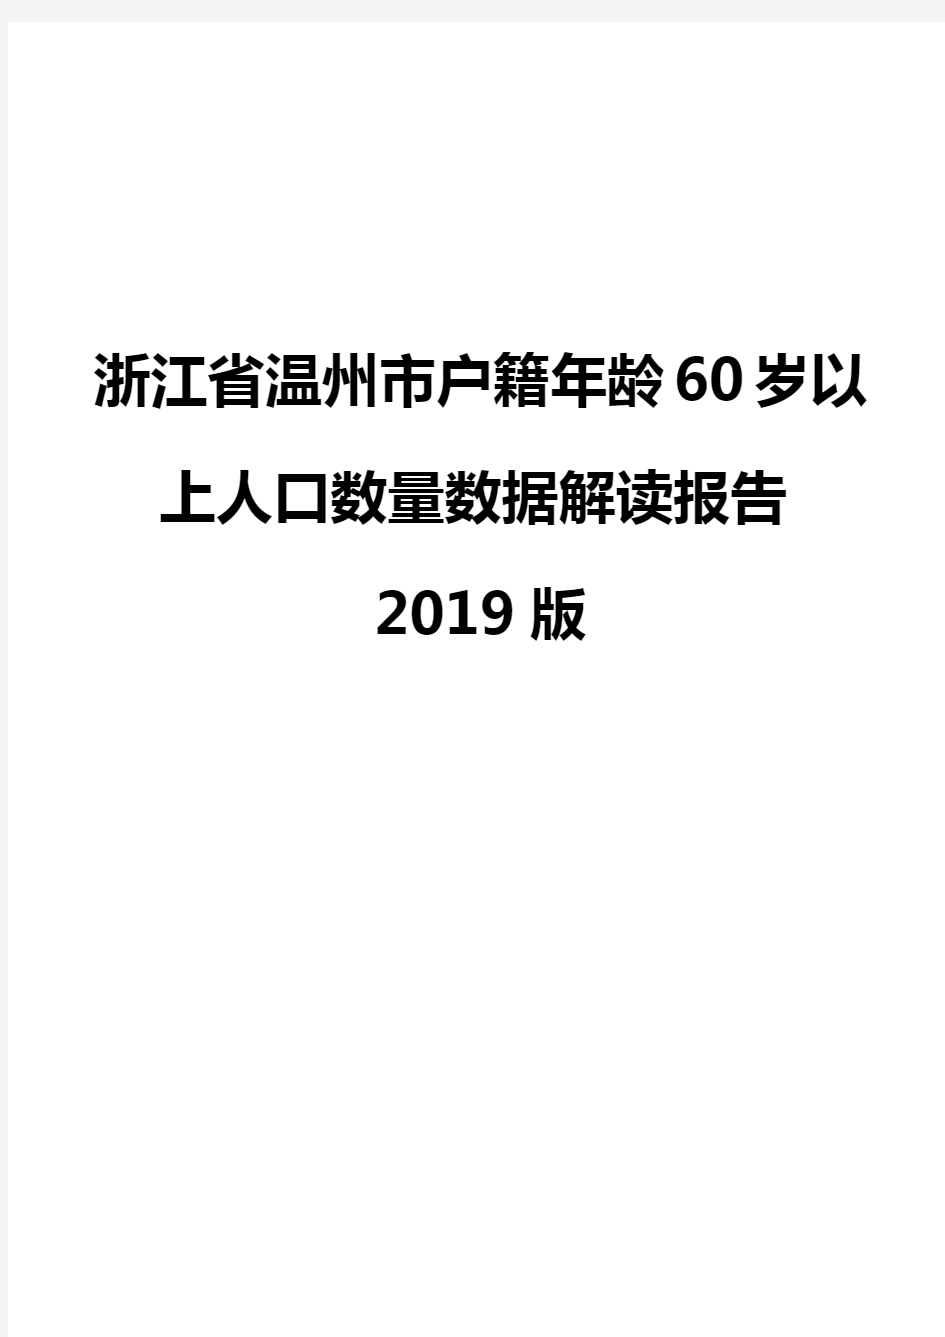 浙江省温州市户籍年龄60岁以上人口数量数据解读报告2019版